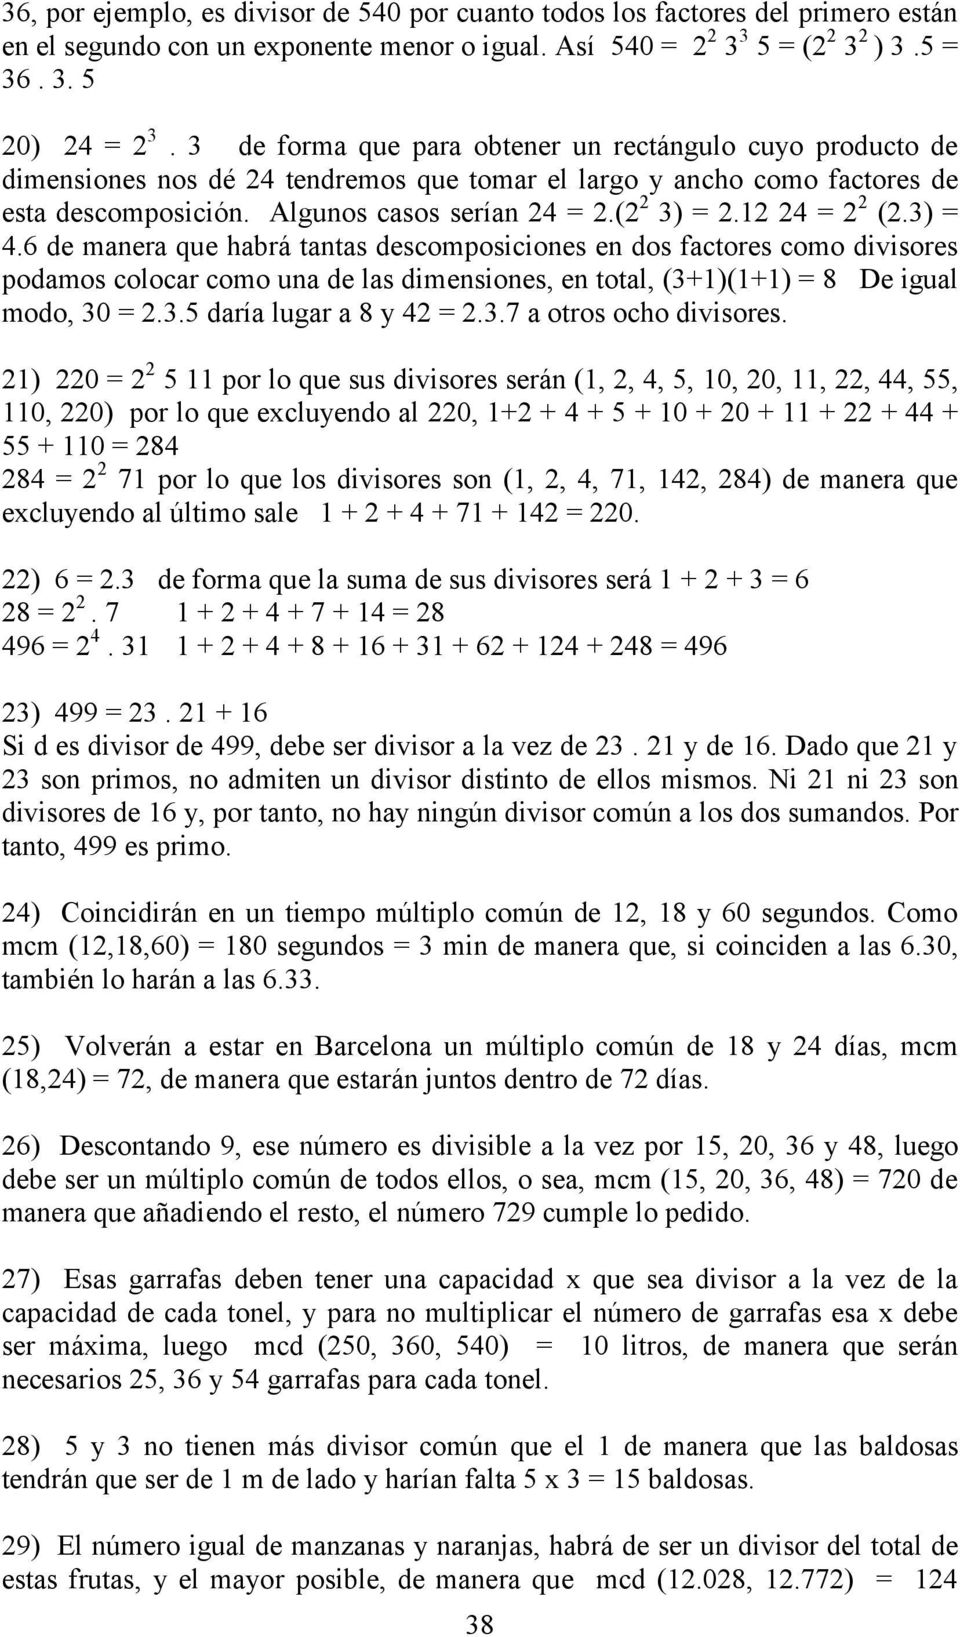 12 24 = 2 2 (2.3) = 4.6 de manera que habrá tantas descomposiciones en dos factores como divisores podamos colocar como una de las dimensiones, en total, (3+1)(1+1) = 8 De igual modo, 30 = 2.3.5 daría lugar a 8 y 42 = 2.